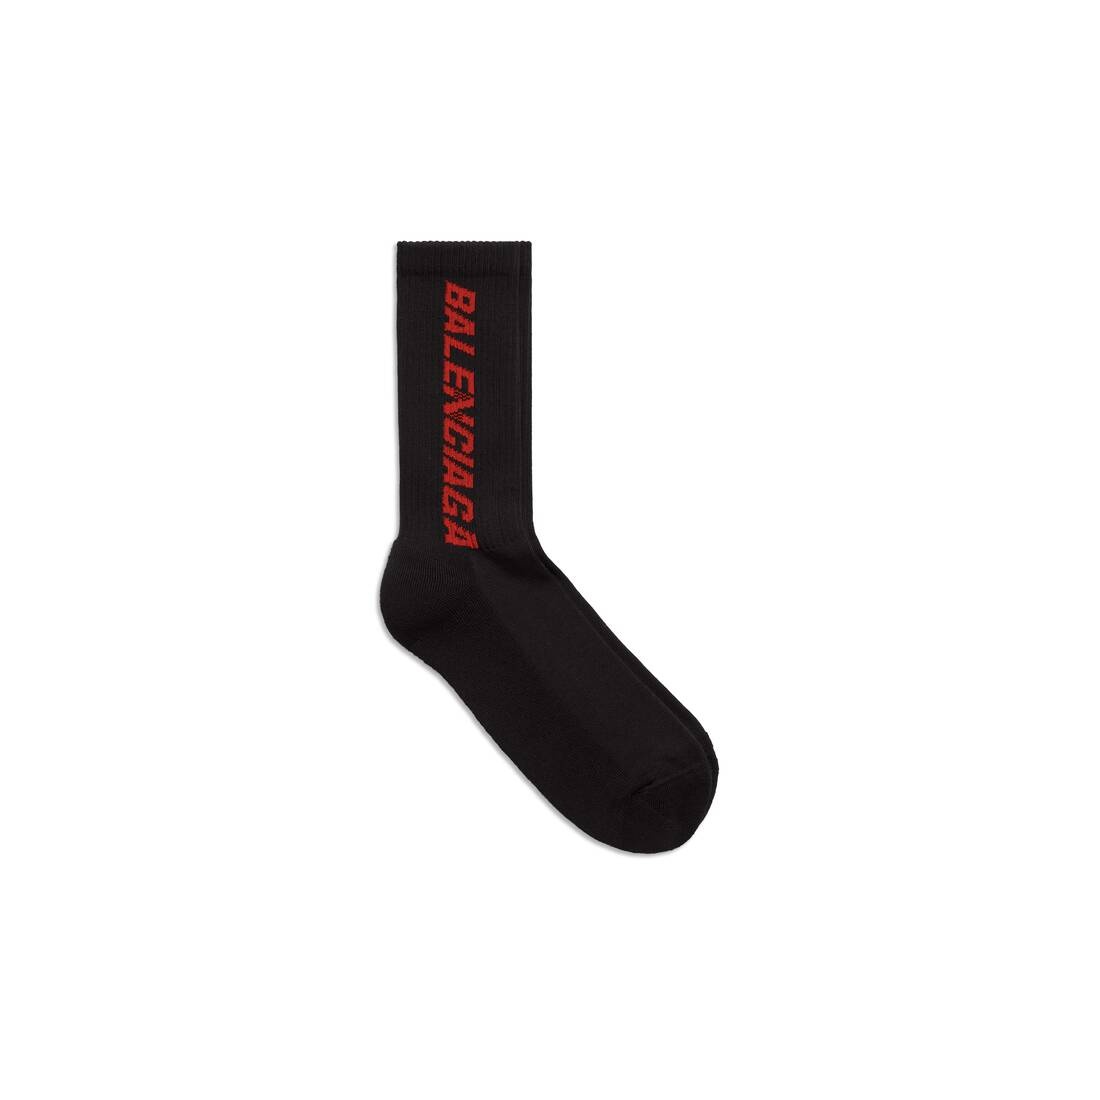 Men's Racer Socks in Black - 1